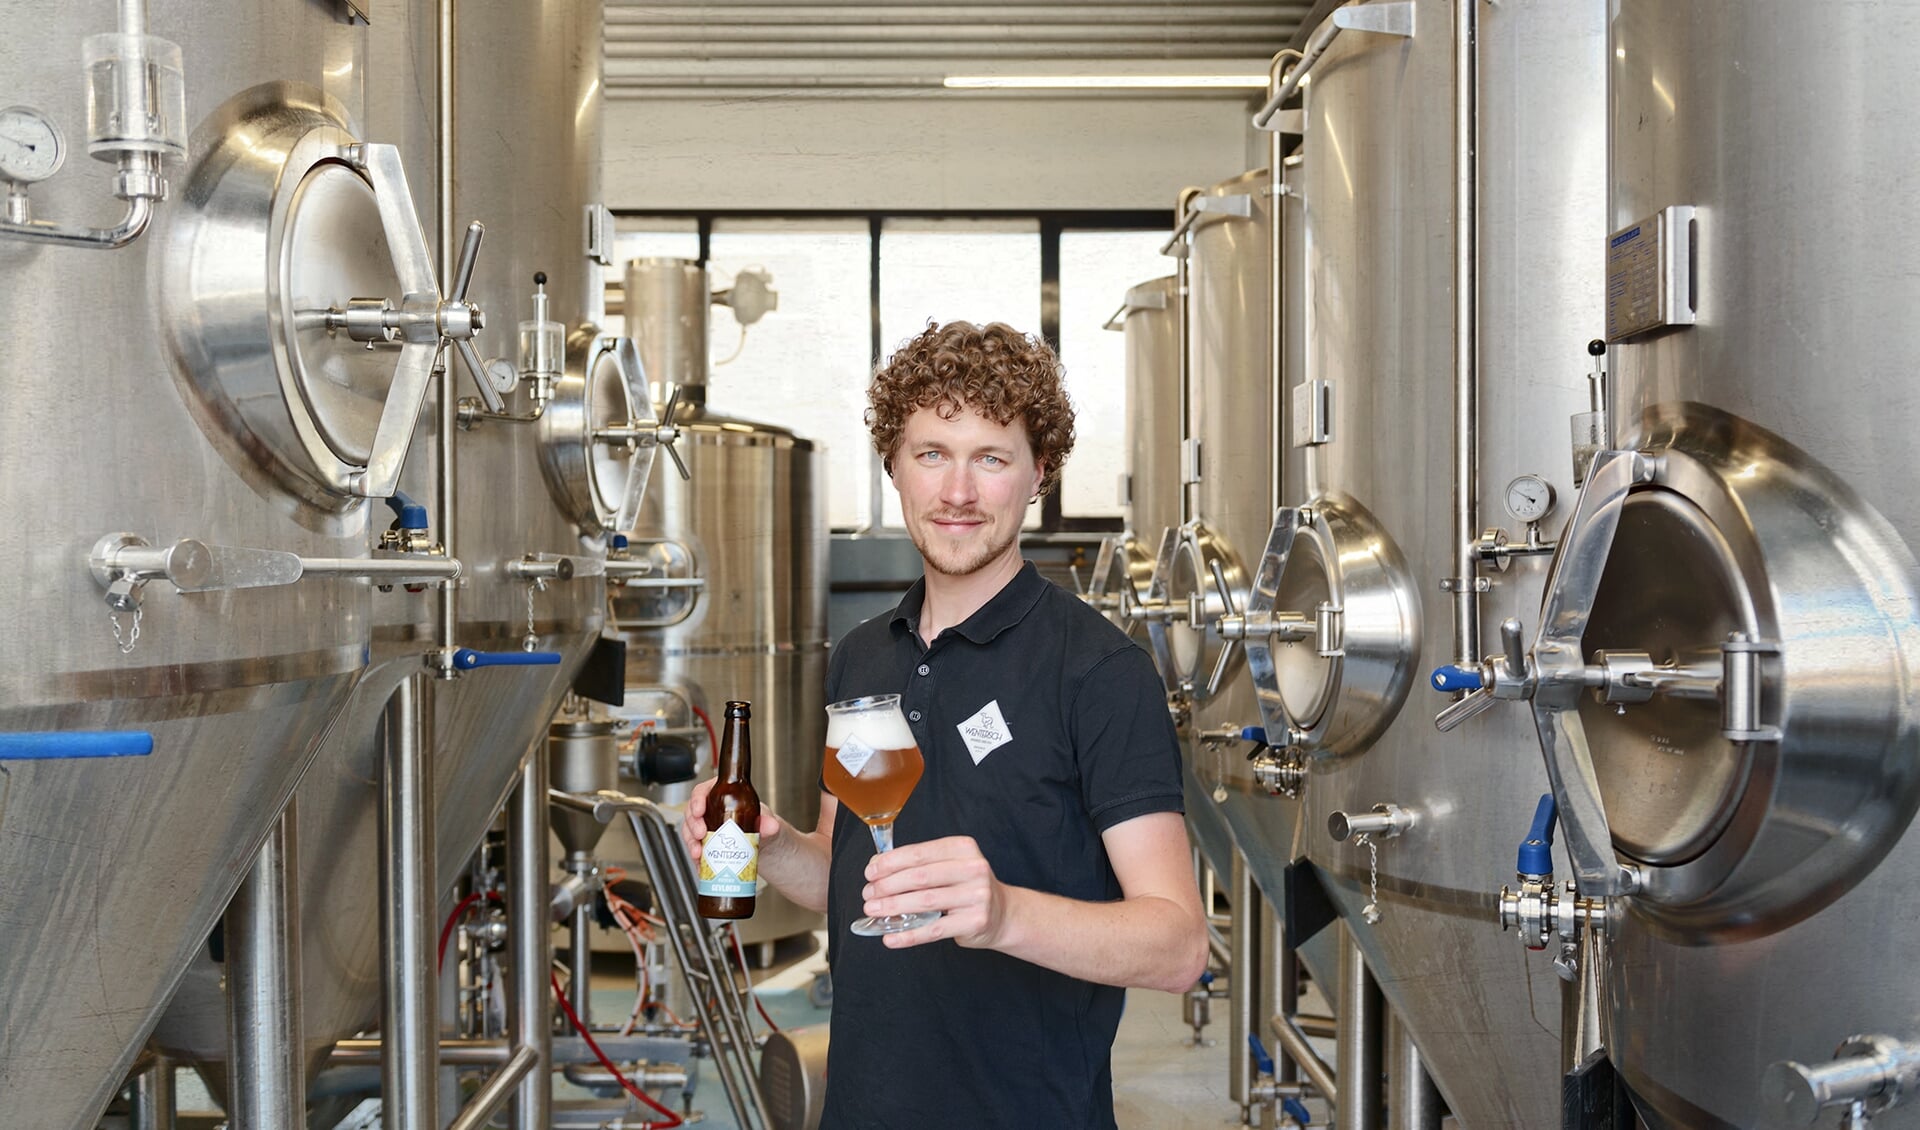 Hoftijser bij bierbrouwerij Wentersch. Foto: PR